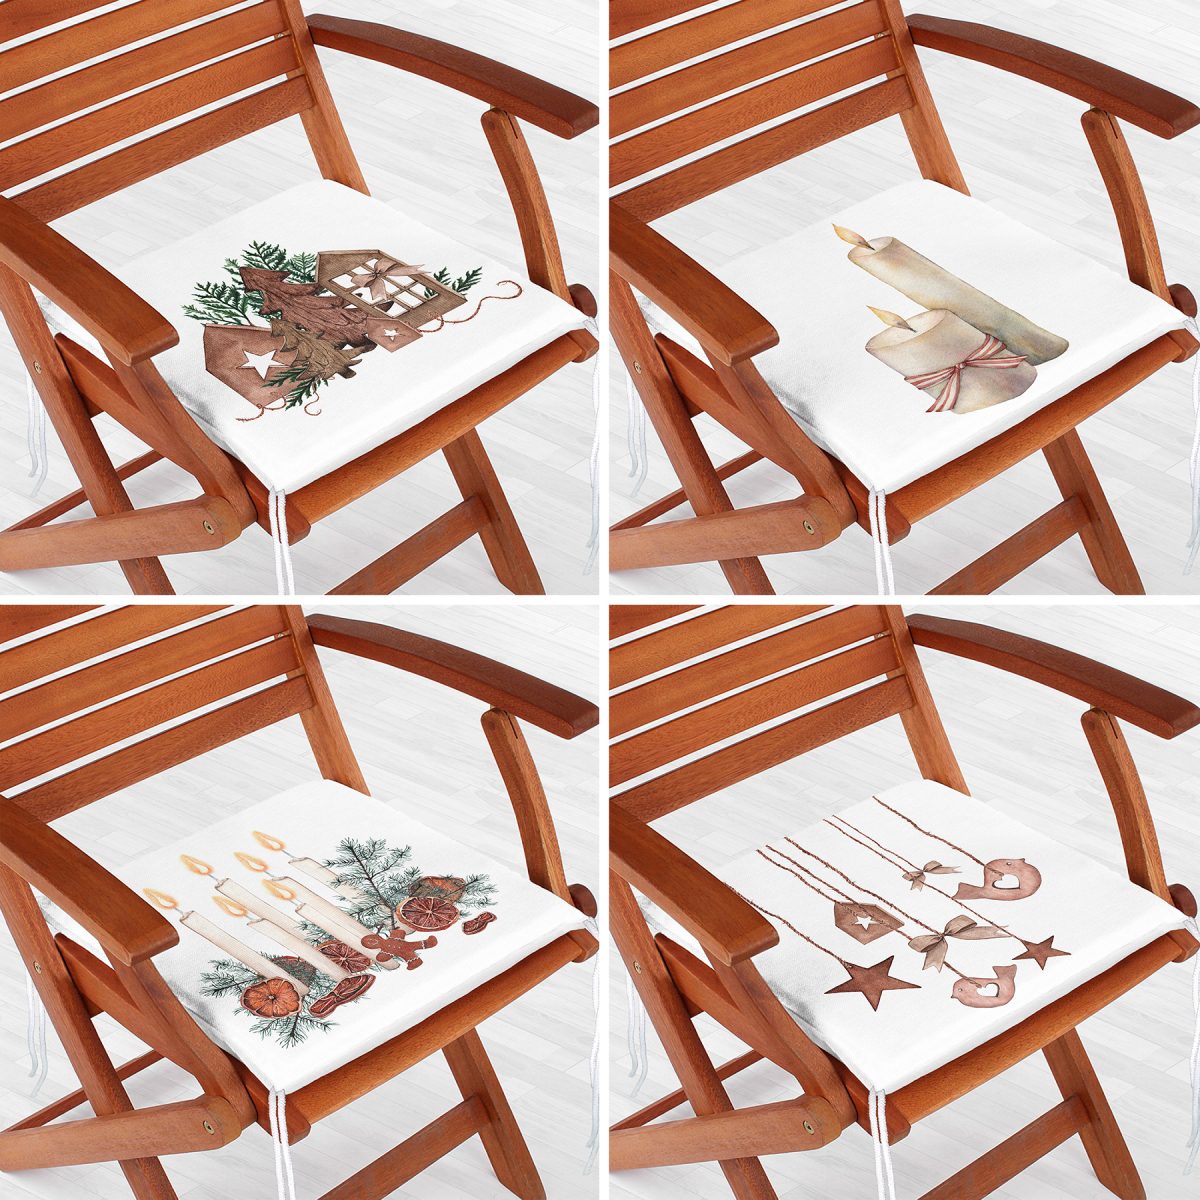 4'lü Özel Tasarım Mum Dekoratif Süs Tasarımlı Dijital Baskılı Modern Fermuarlı Sandalye Minderi Seti Realhomes